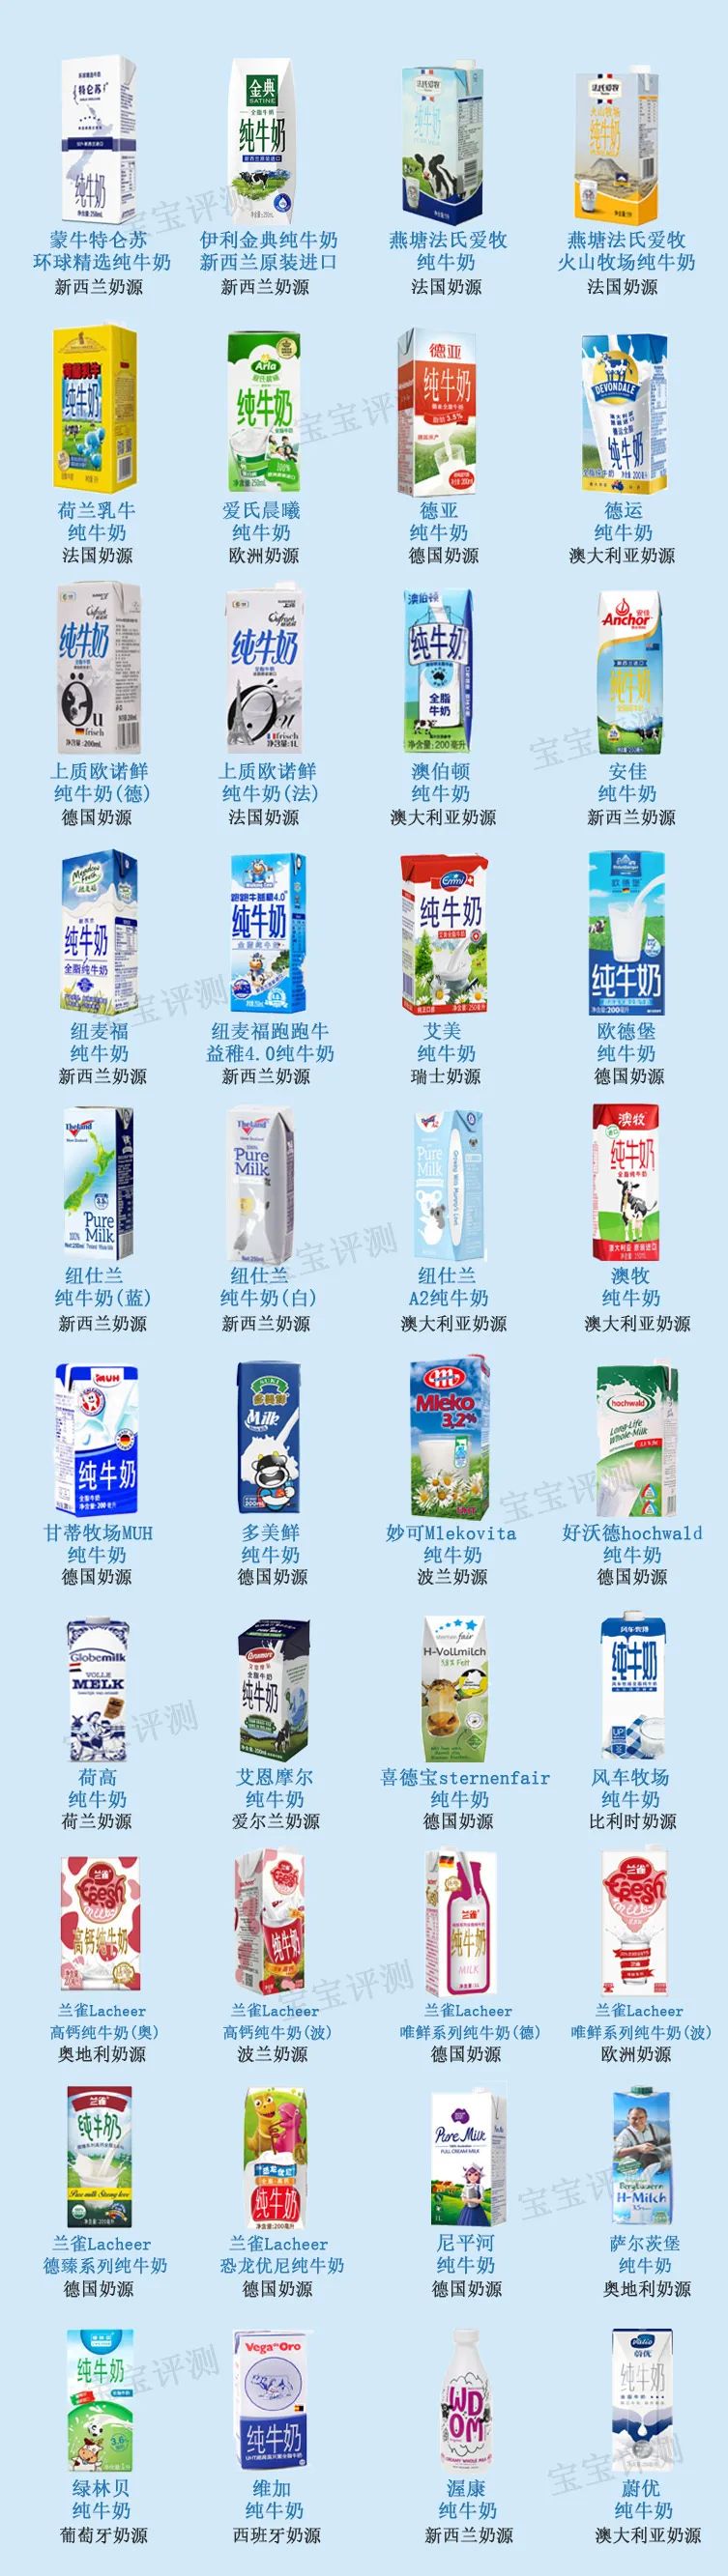 进口牛奶品牌排行榜